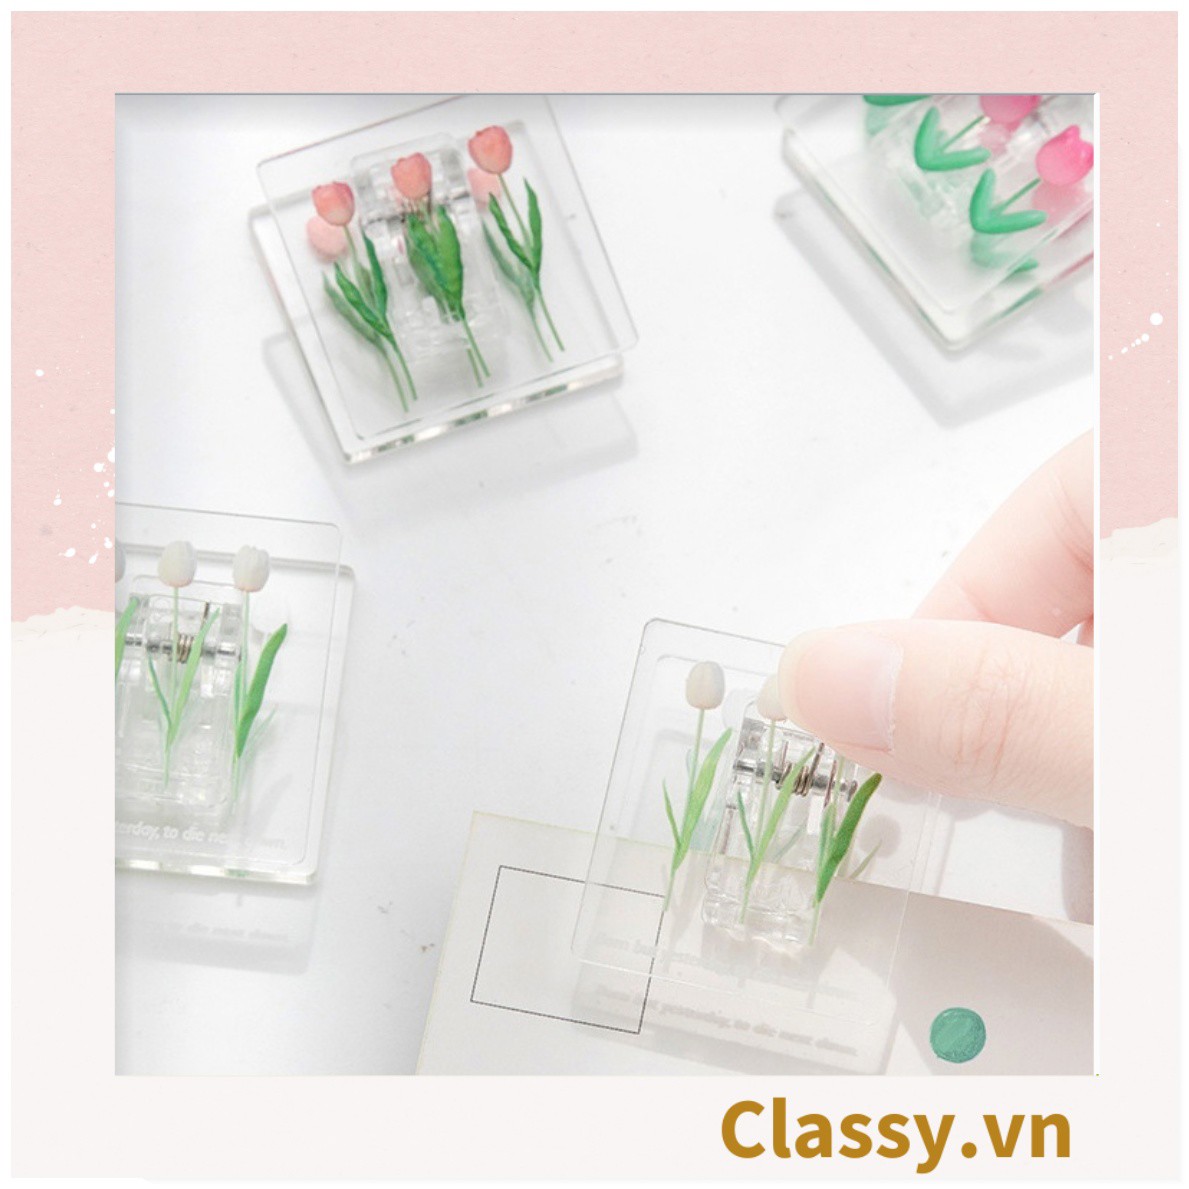 Kẹp giấy nhựa Acrylic trong suốt hoa tulips sử dụng kẹp dấu trang, kẹp giấy ,văn phòng phẩm sáng tạo tiện lợi PK937